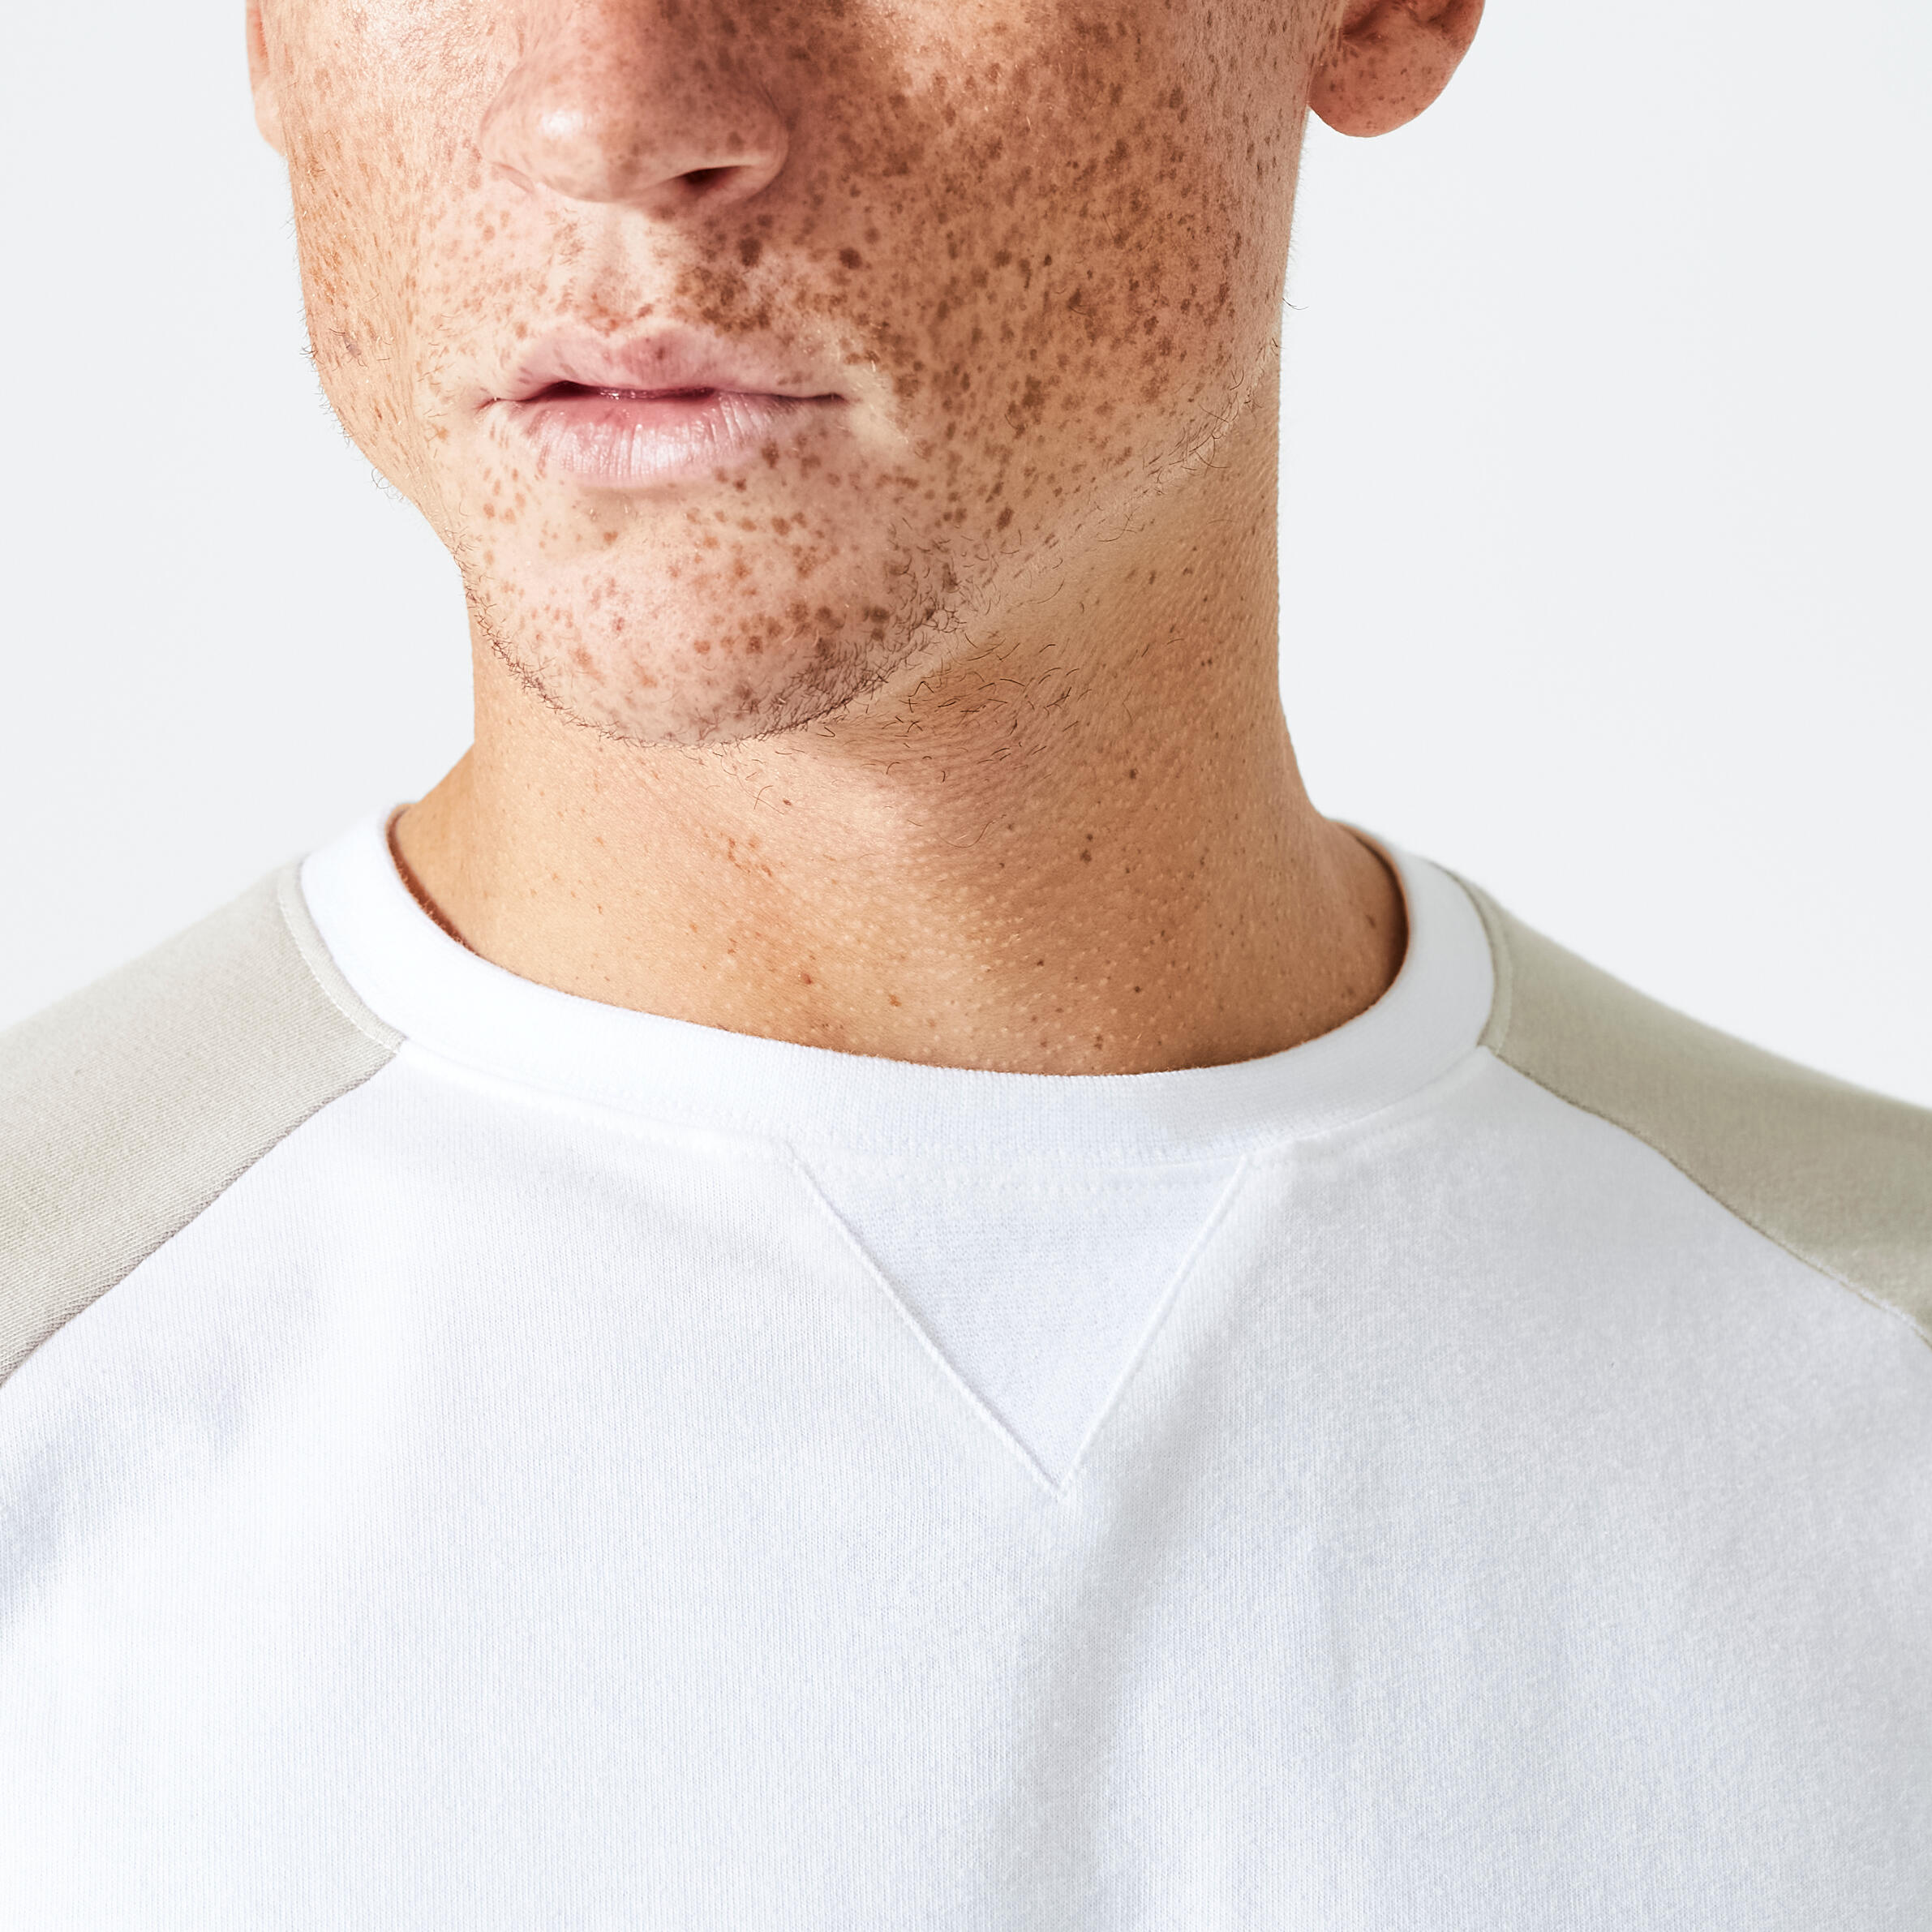 Men's Long-Sleeved Fitness T-Shirt 520 - White/Beige 3/5